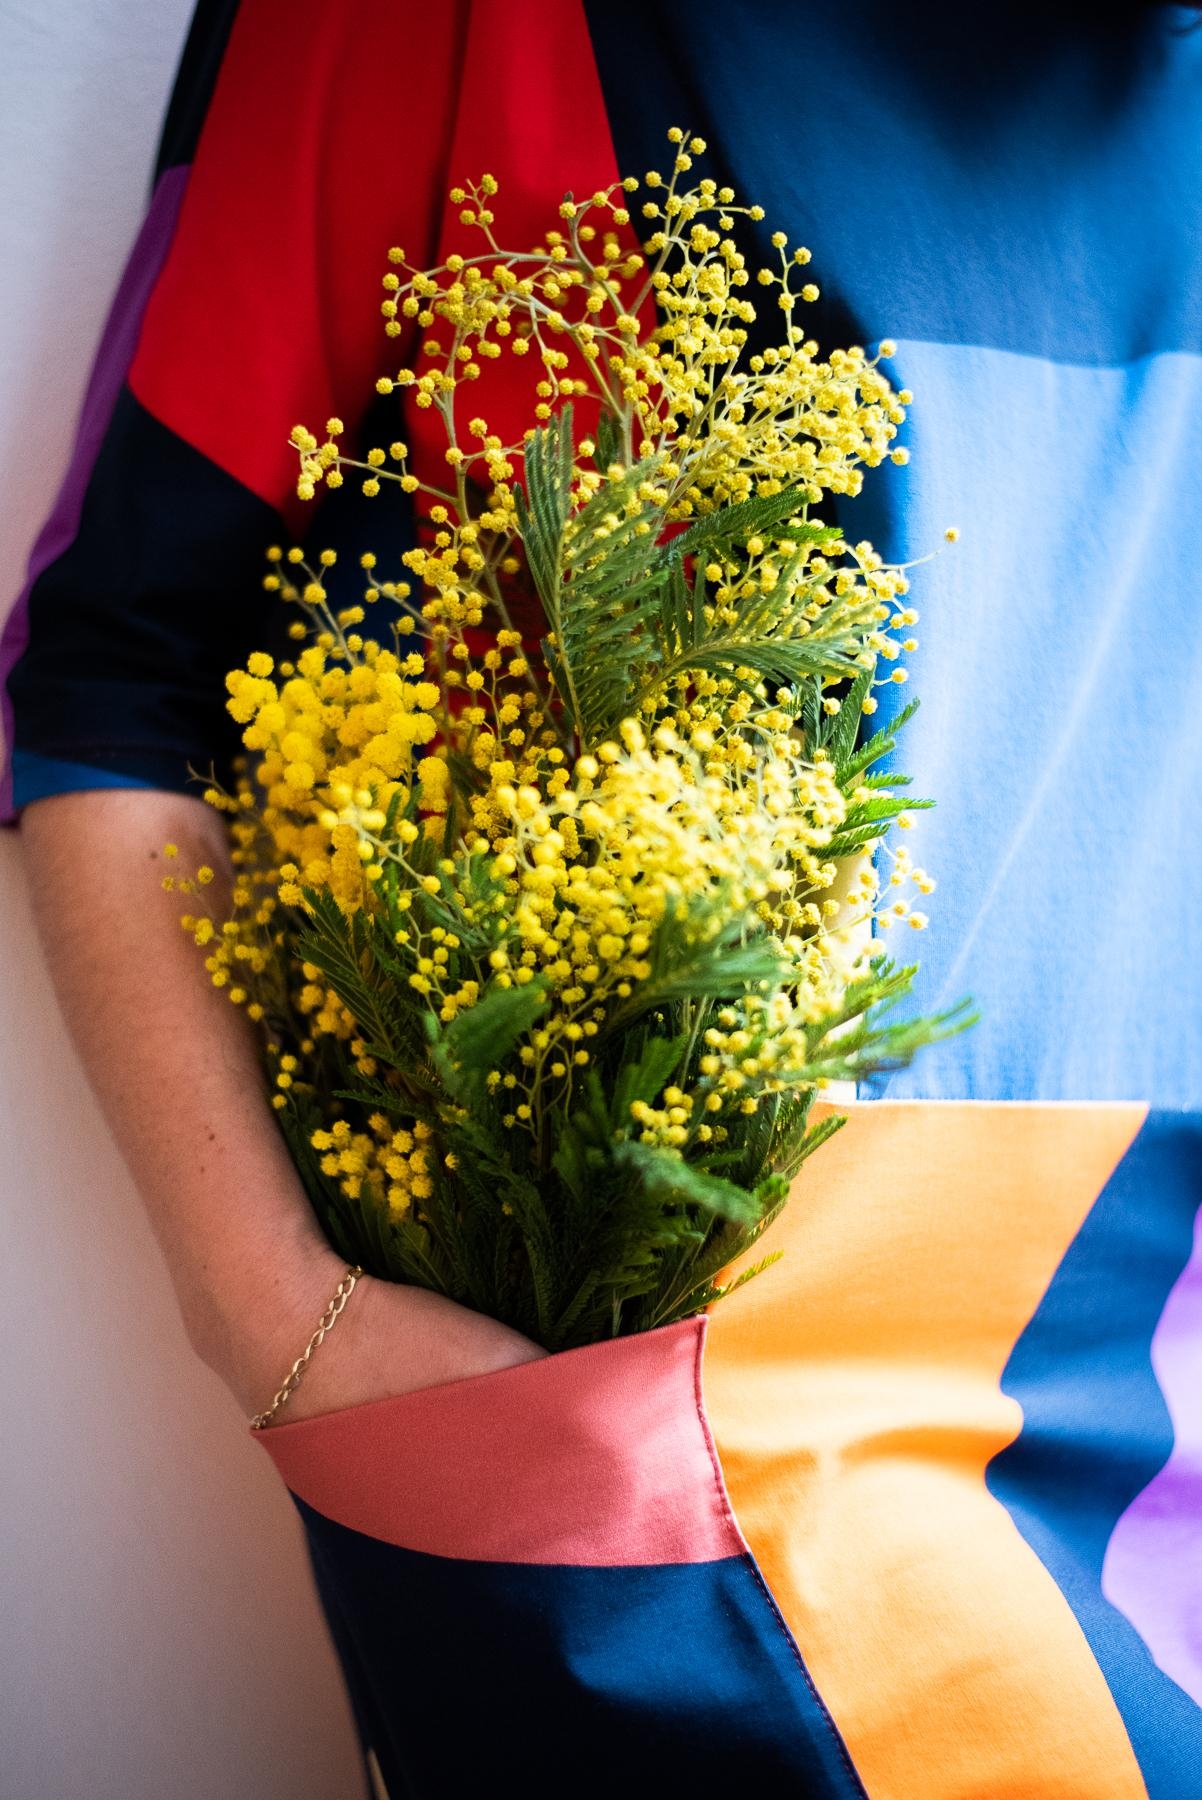 Happy Friday! #mimosen #fridayflowers #freshflowers #fashioncrush #springoutfit #fashioninspo #ootd 